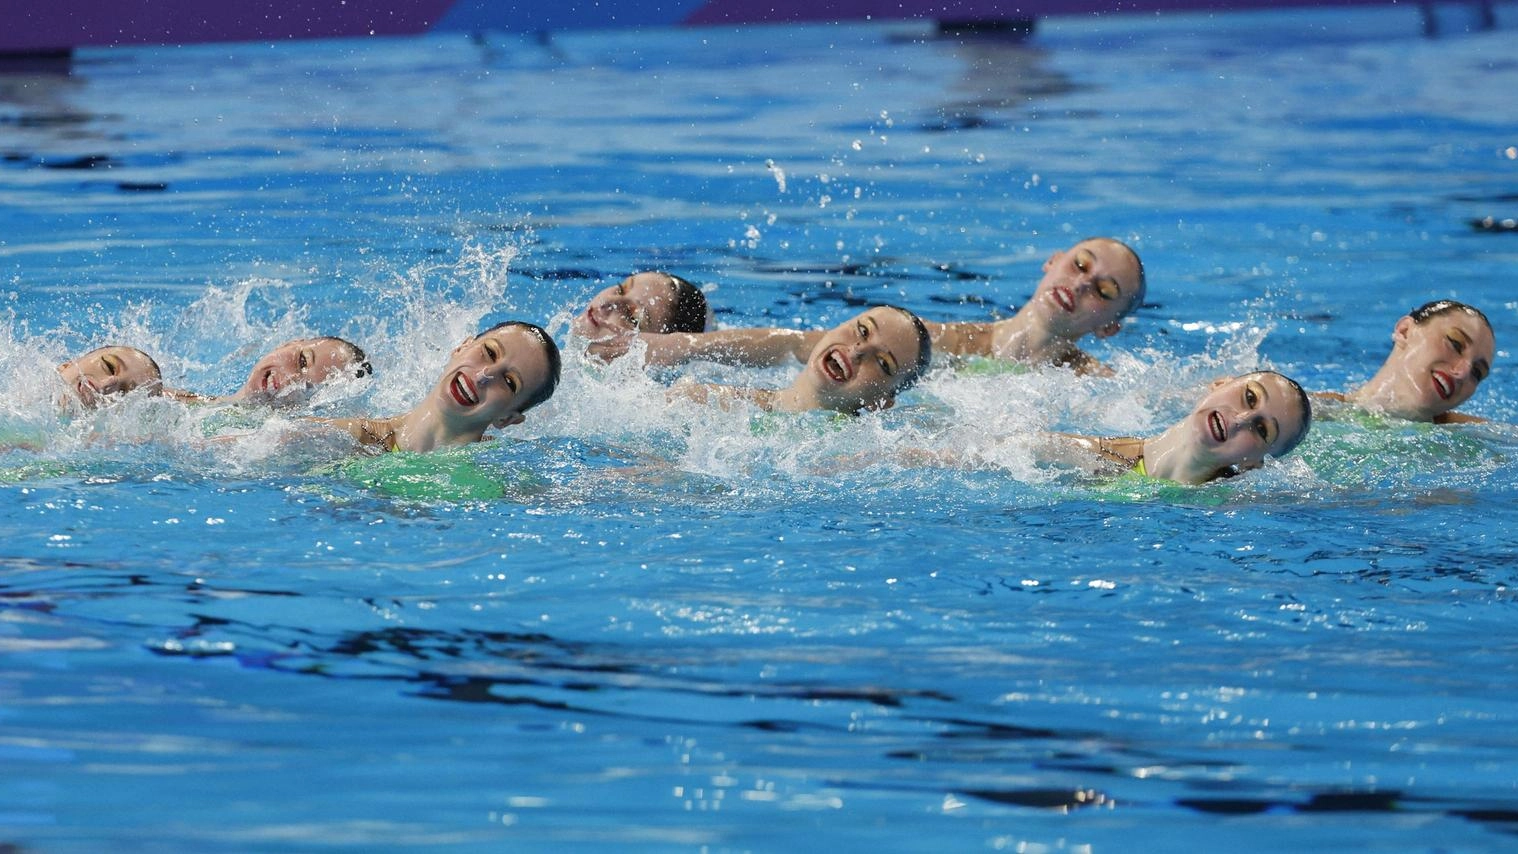 Nuoto artistico: Italia 5/a nella prova tecnica a squadre a Doha